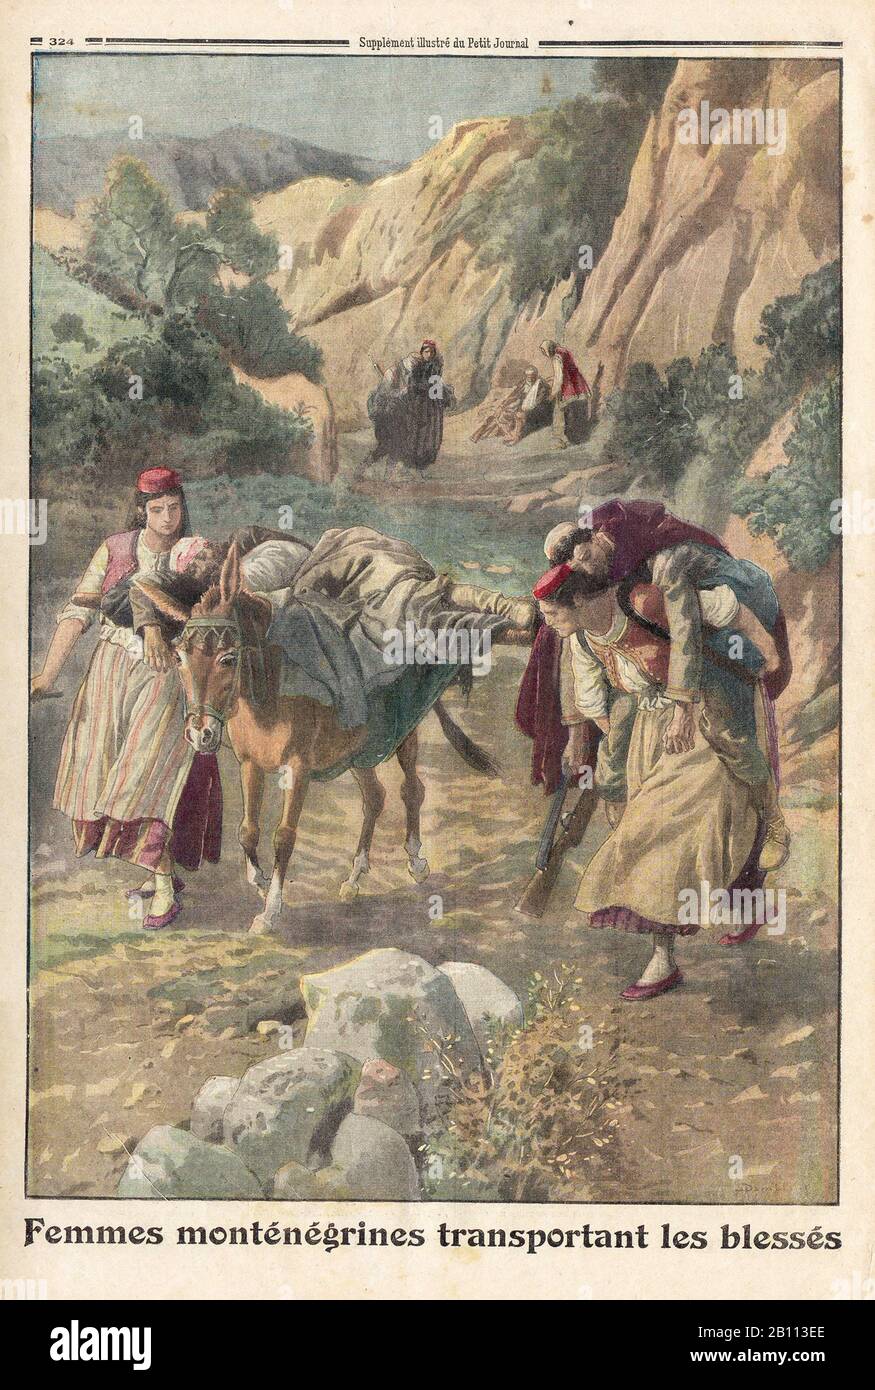 Femmes monténégrines transportant les Blessés - montenegrinische Frauen, die die Verwundeten tragen - In der französischen Illustrierten Zeitung "Le Petit Journal" - Stockfoto